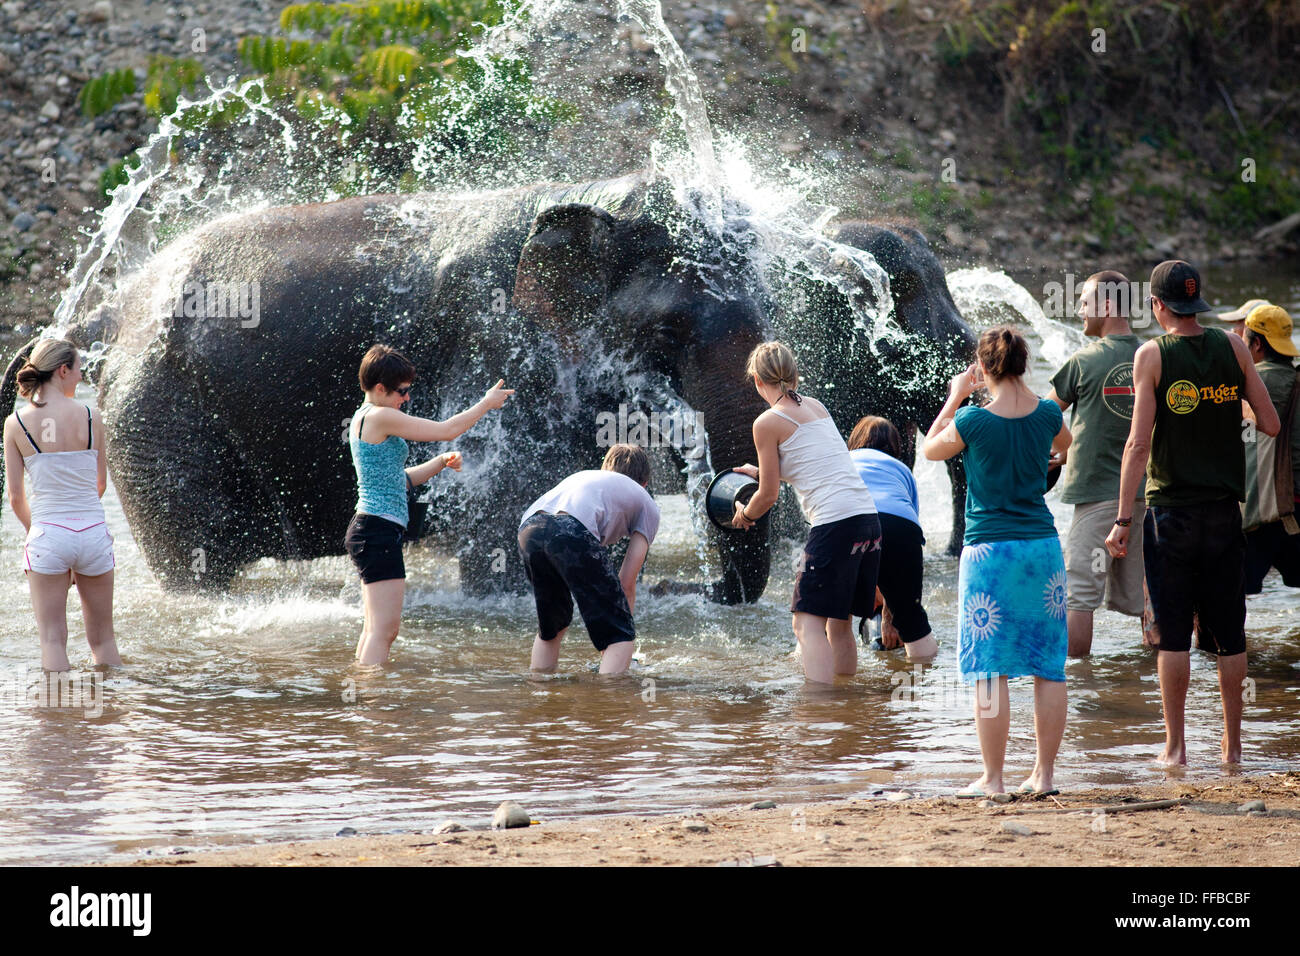 Washing elephants at Elephant Nature Park Stock Photo